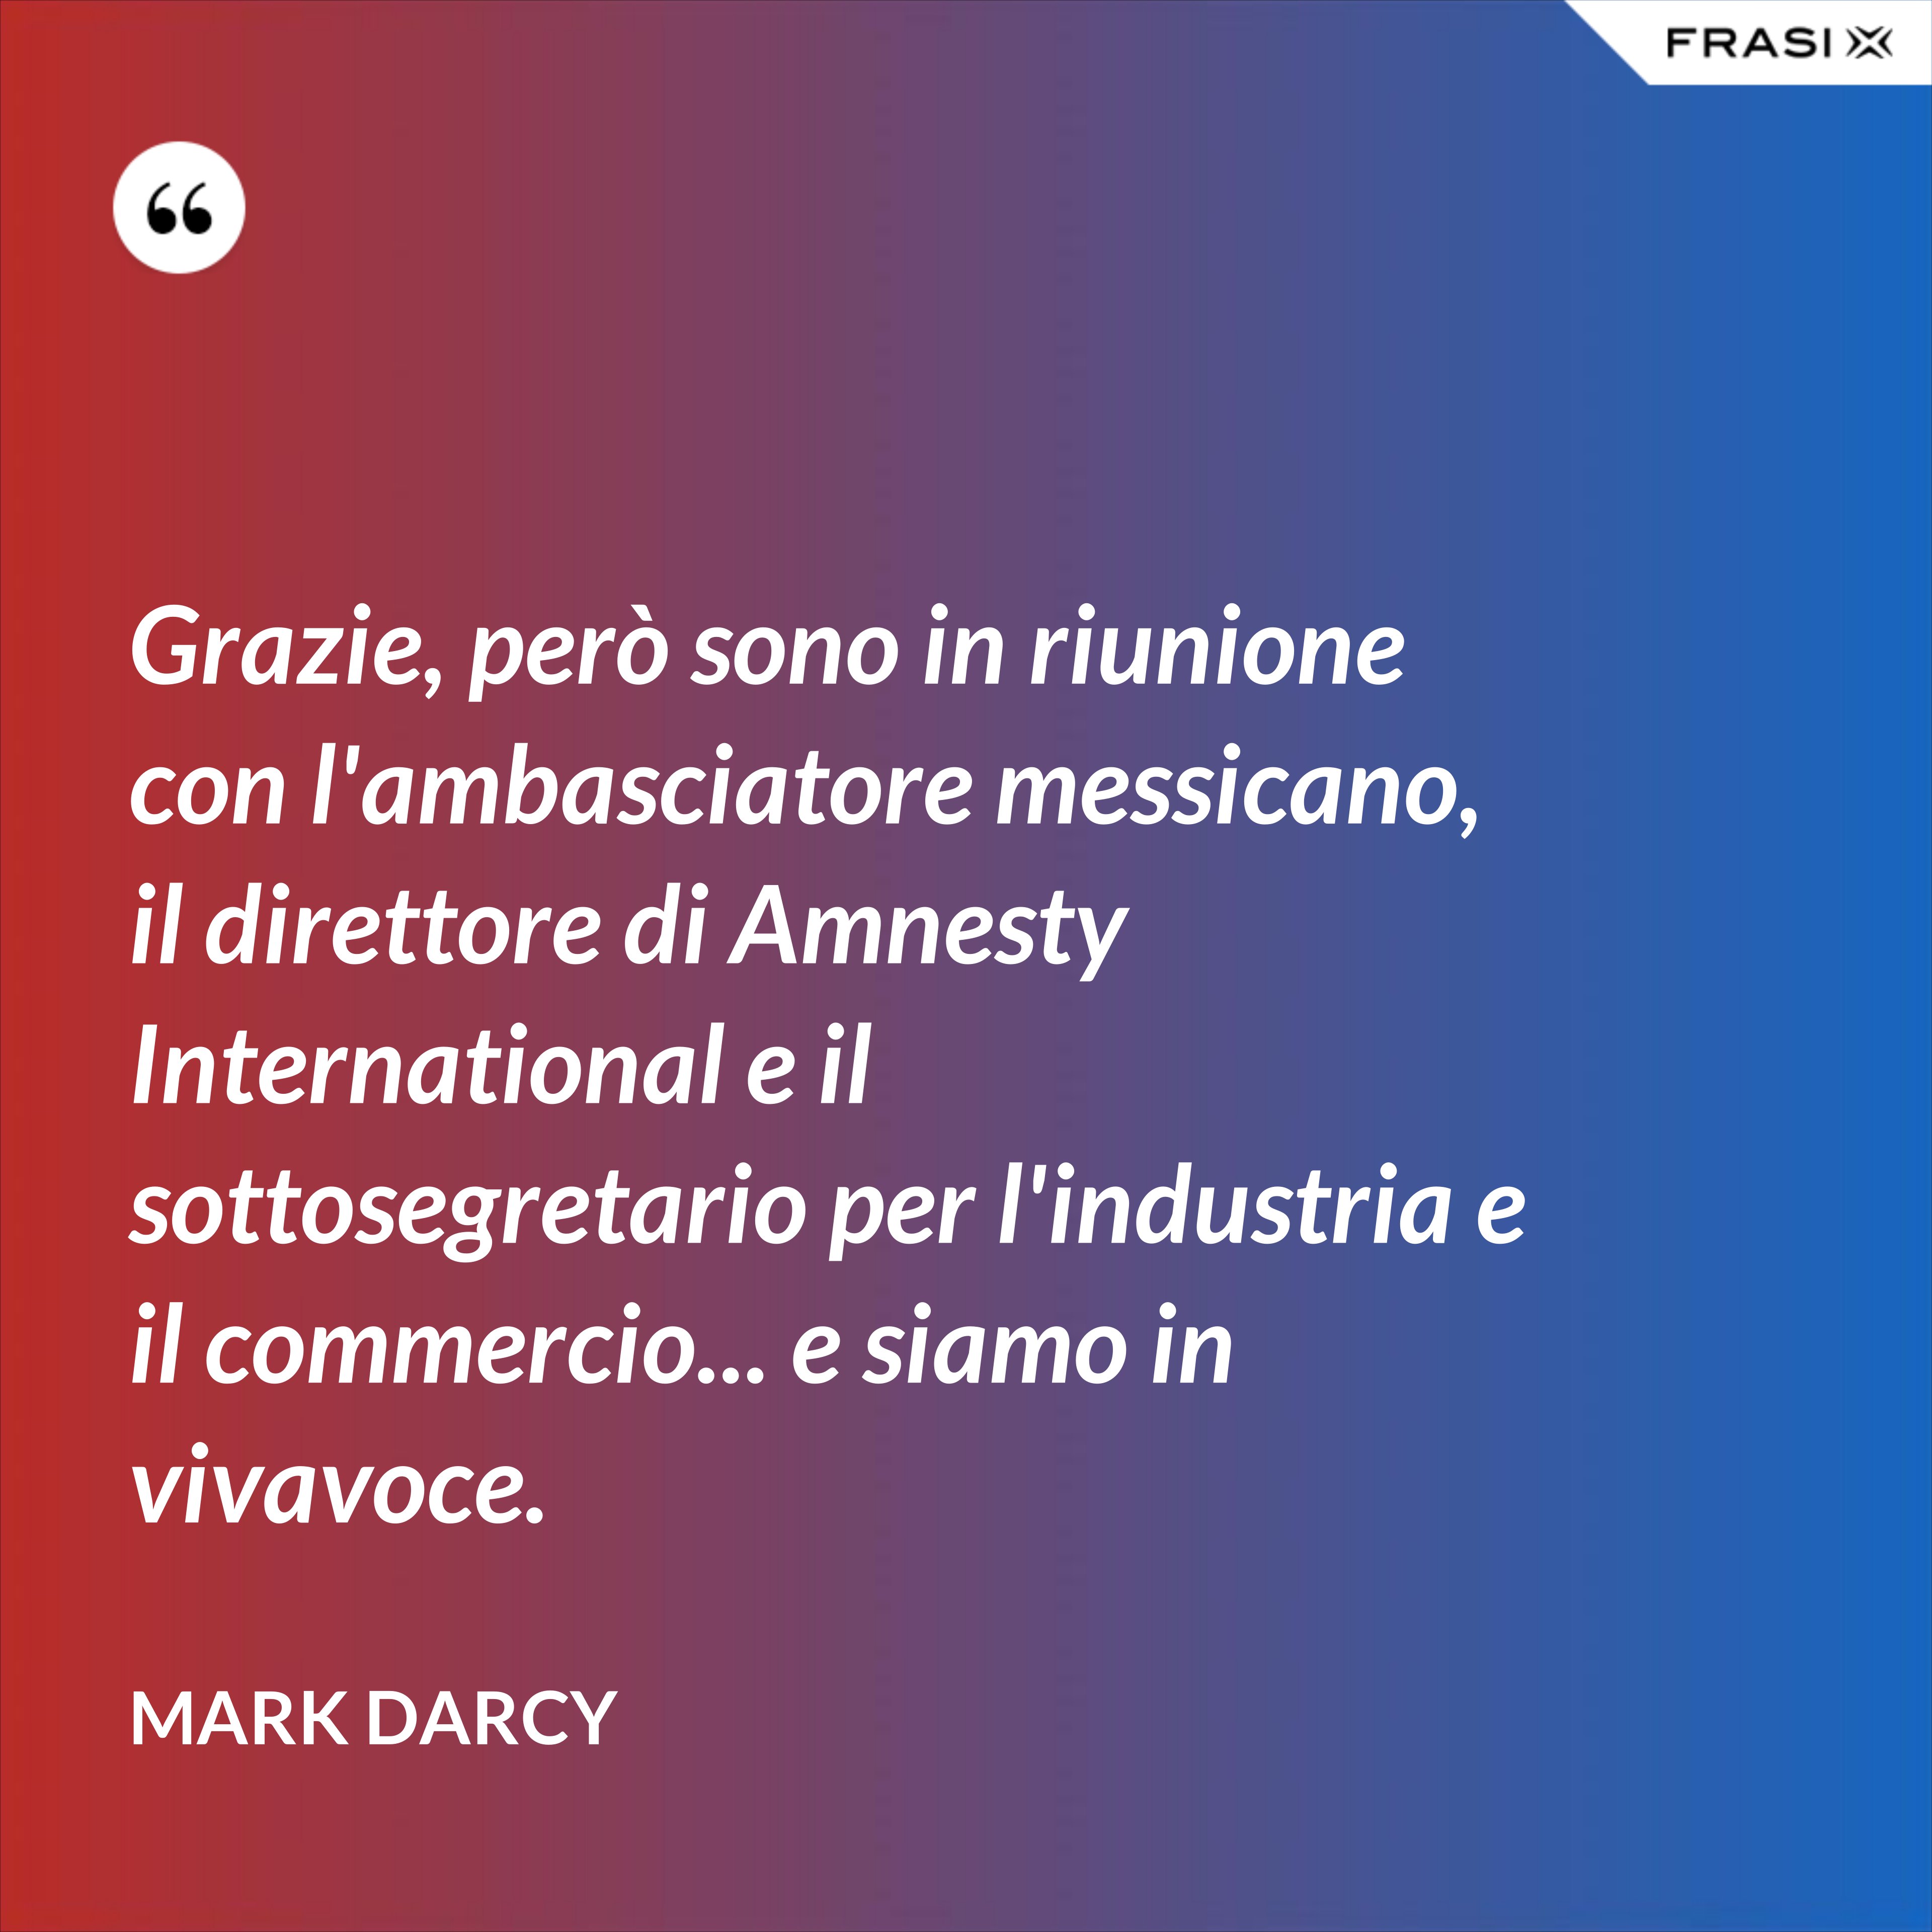 Grazie, però sono in riunione con l'ambasciatore messicano, il direttore di Amnesty International e il sottosegretario per l'industria e il commercio... e siamo in vivavoce. - Mark Darcy